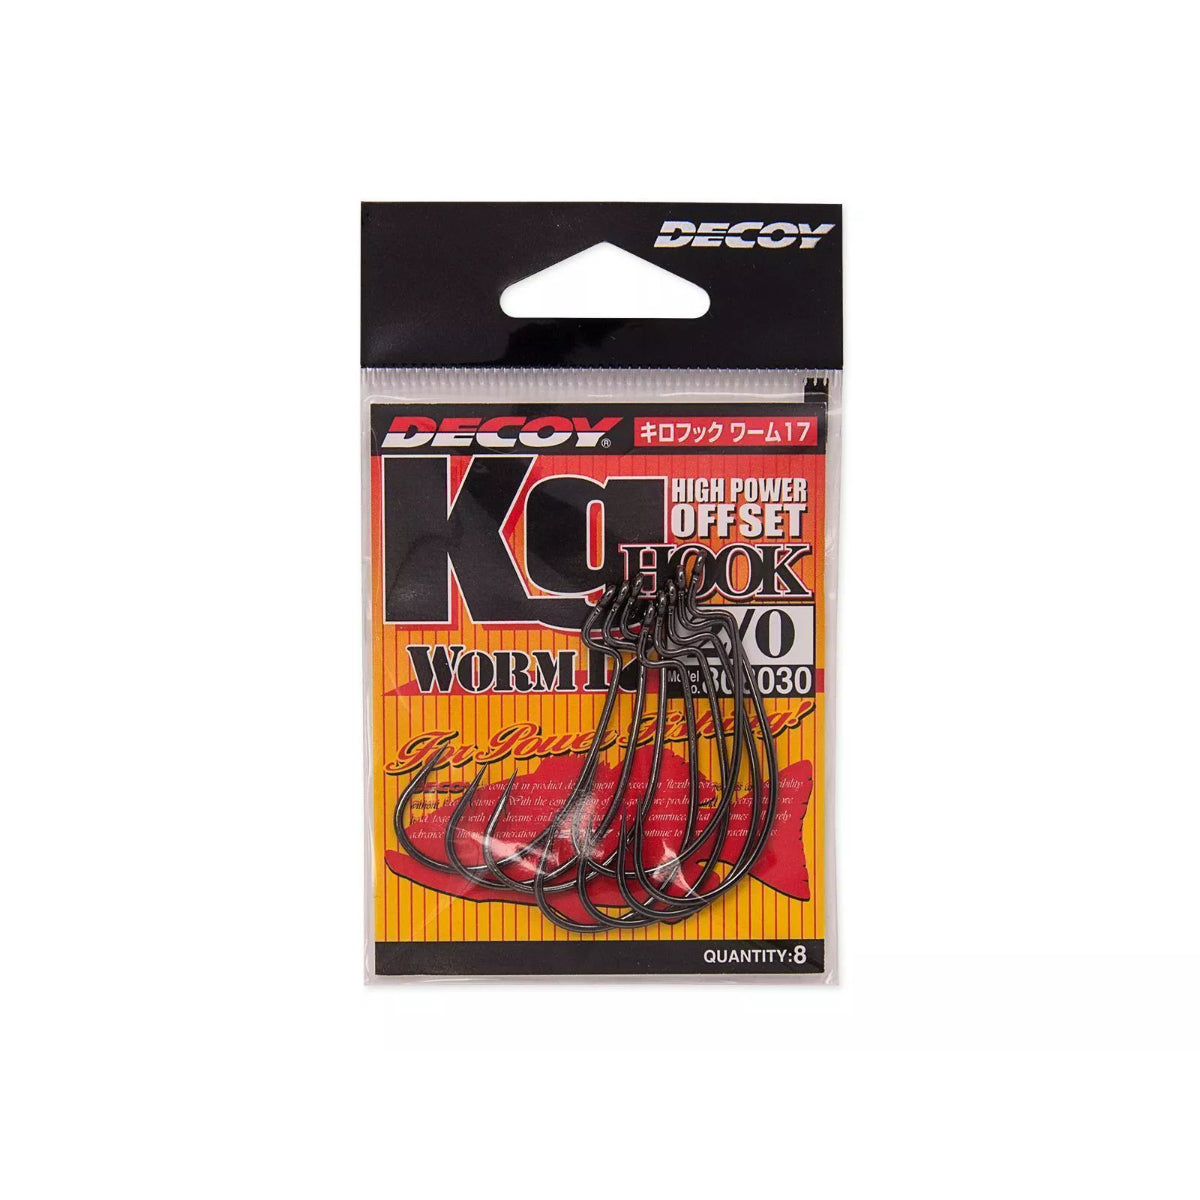 Decoy KG High Power Offset Hook Worm17